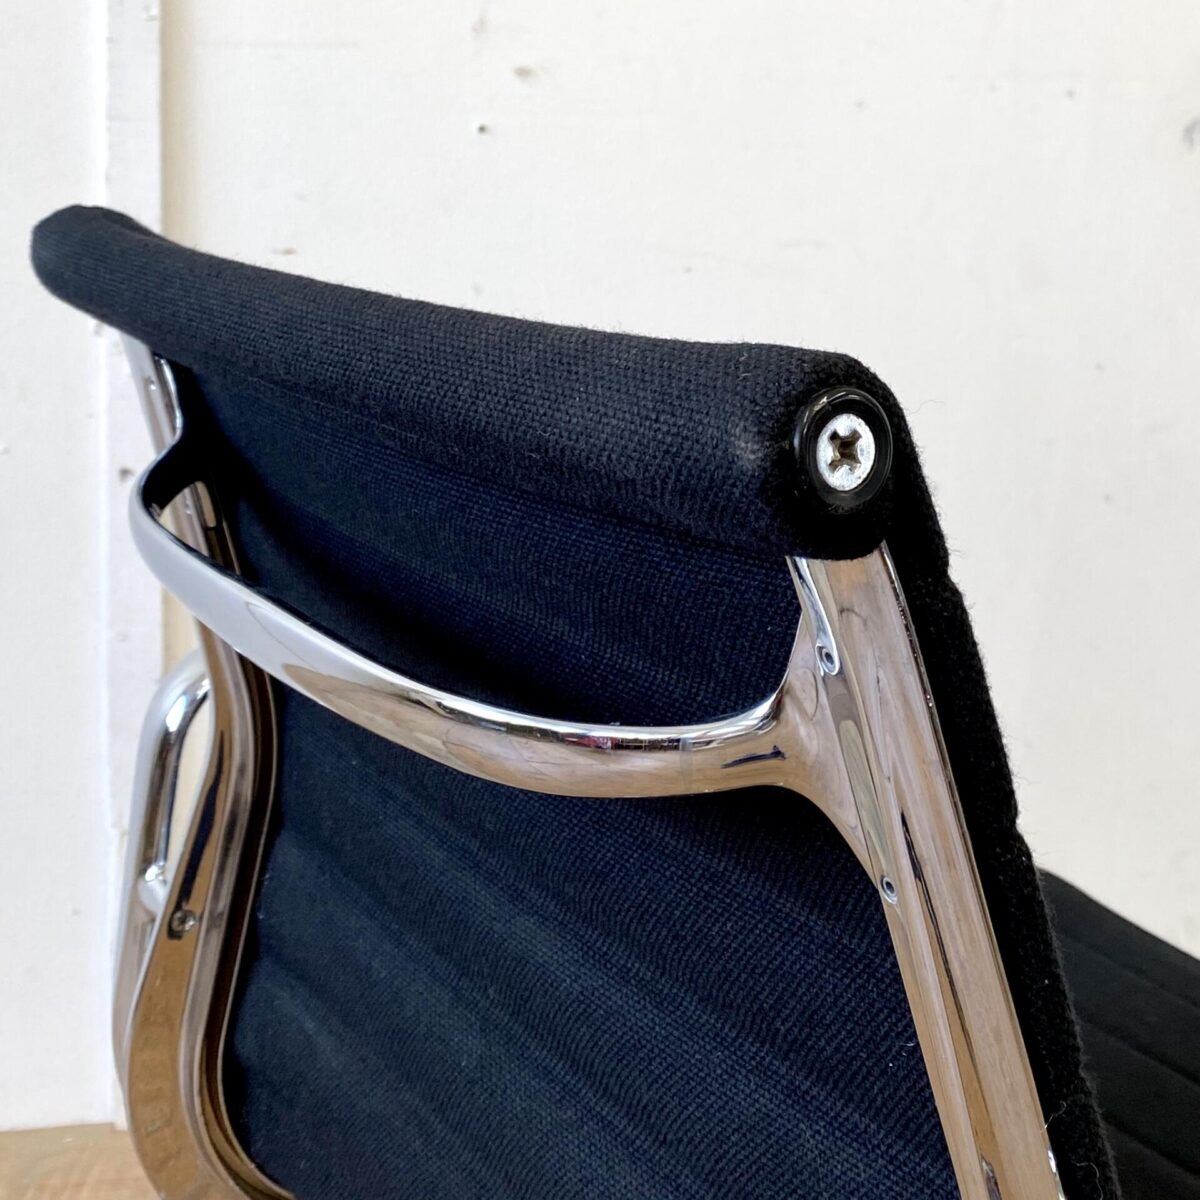 Deuxieme.shop Eames Alu Chair 60er Jahre designklassiker. Aluminium Chair EA 117 von Ray und Charles Eames. Der von Vitra produzierte Bürostuhl ist auf Rollen, höhenverstellbar, neigbar und drehbar. Der schwarze Hopsak Bezug ist in gepflegtem guten Zustand, minimale Abnutzung an den Ecken der Rückenlehne. Die verchromten Metall Elemente sind teilweise leicht beschlagen. 